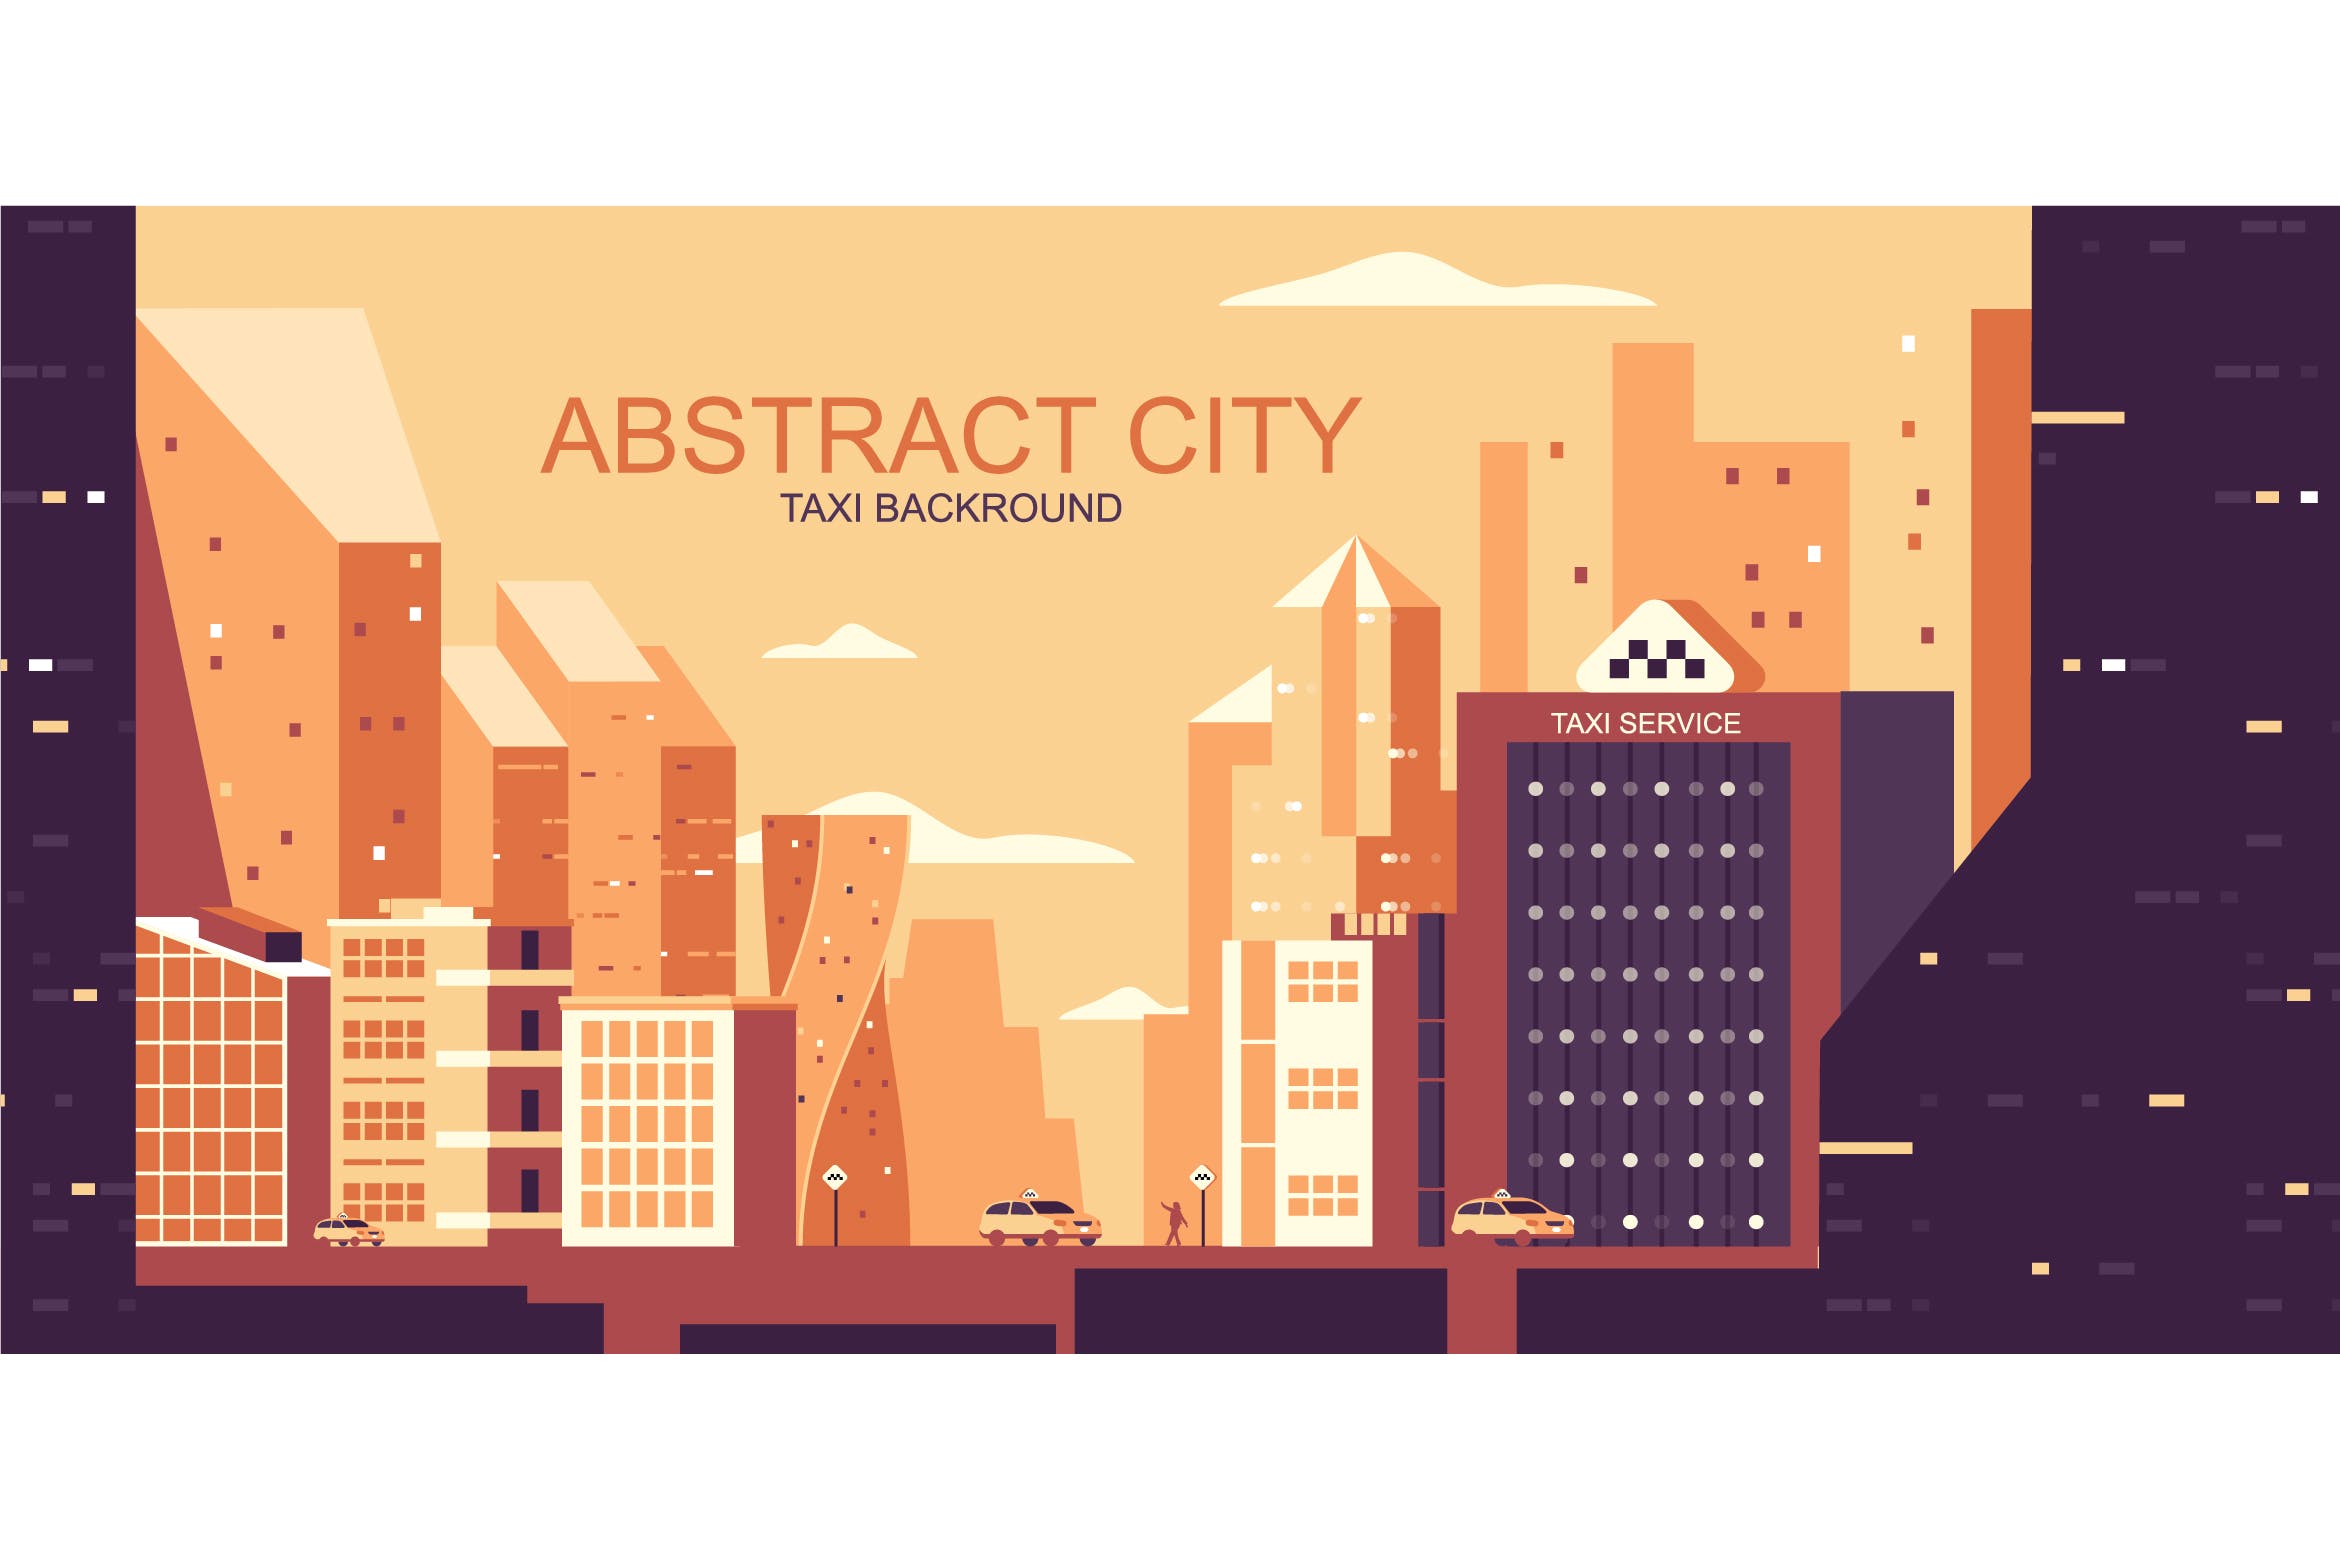 城市交通主题网站Header设计矢量插画第一素材精选 Taxi City Vector Illustration Header Website插图